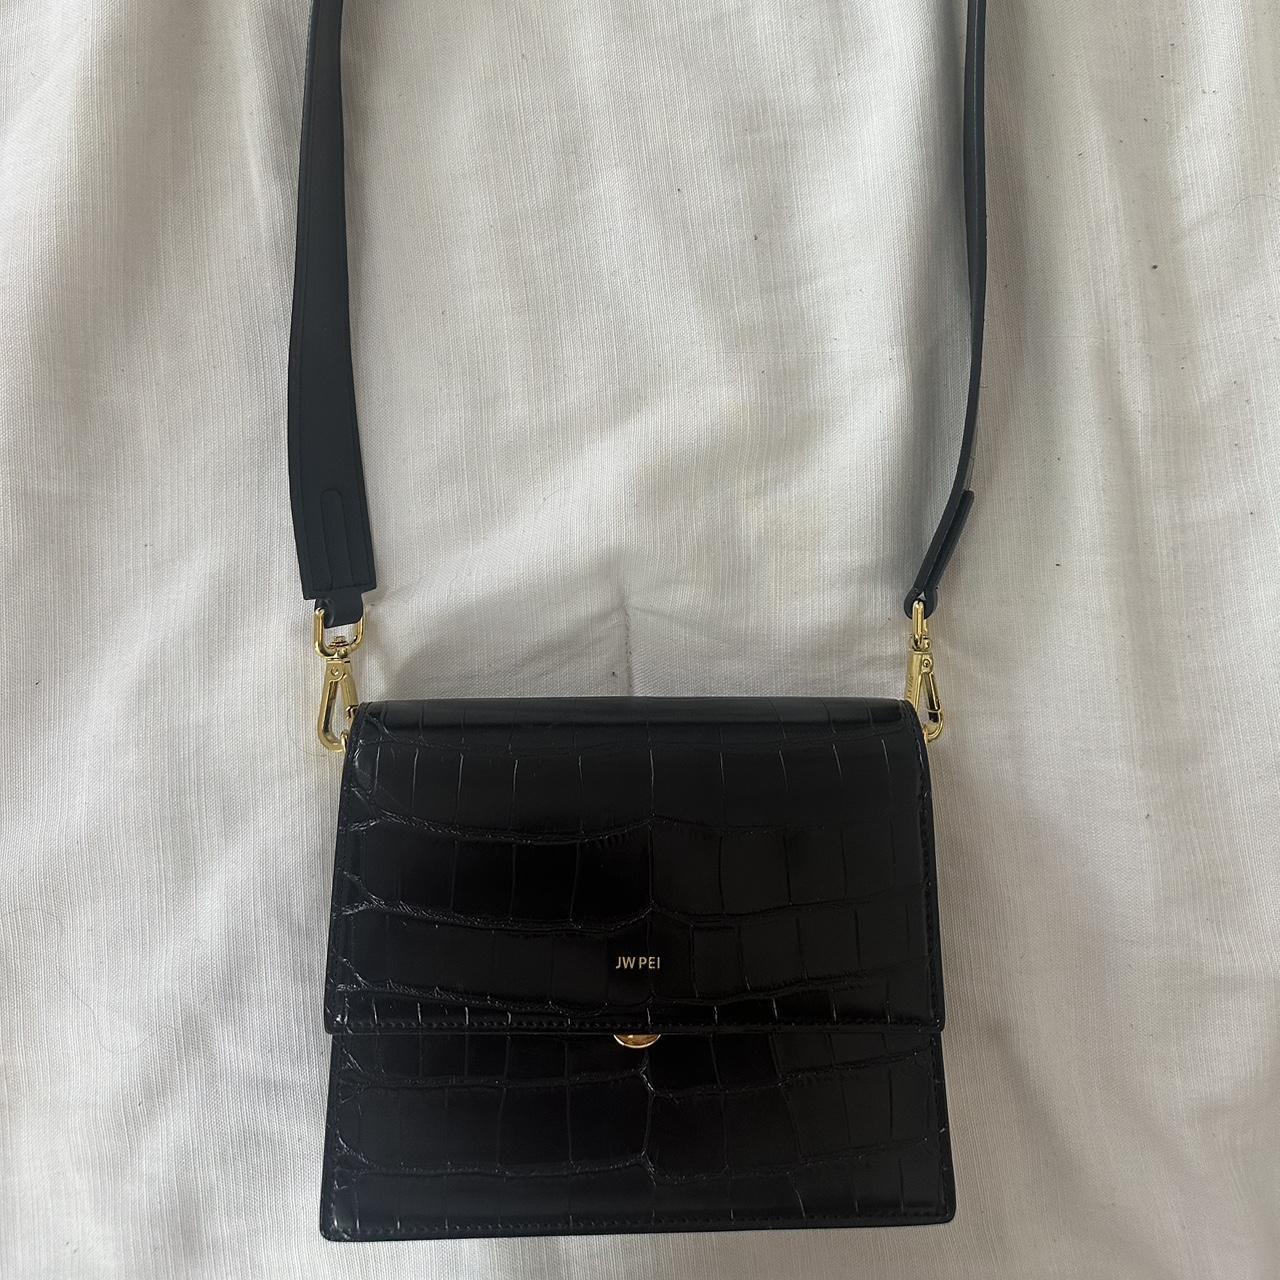 JW Pei Women's Clutch Bags - Black